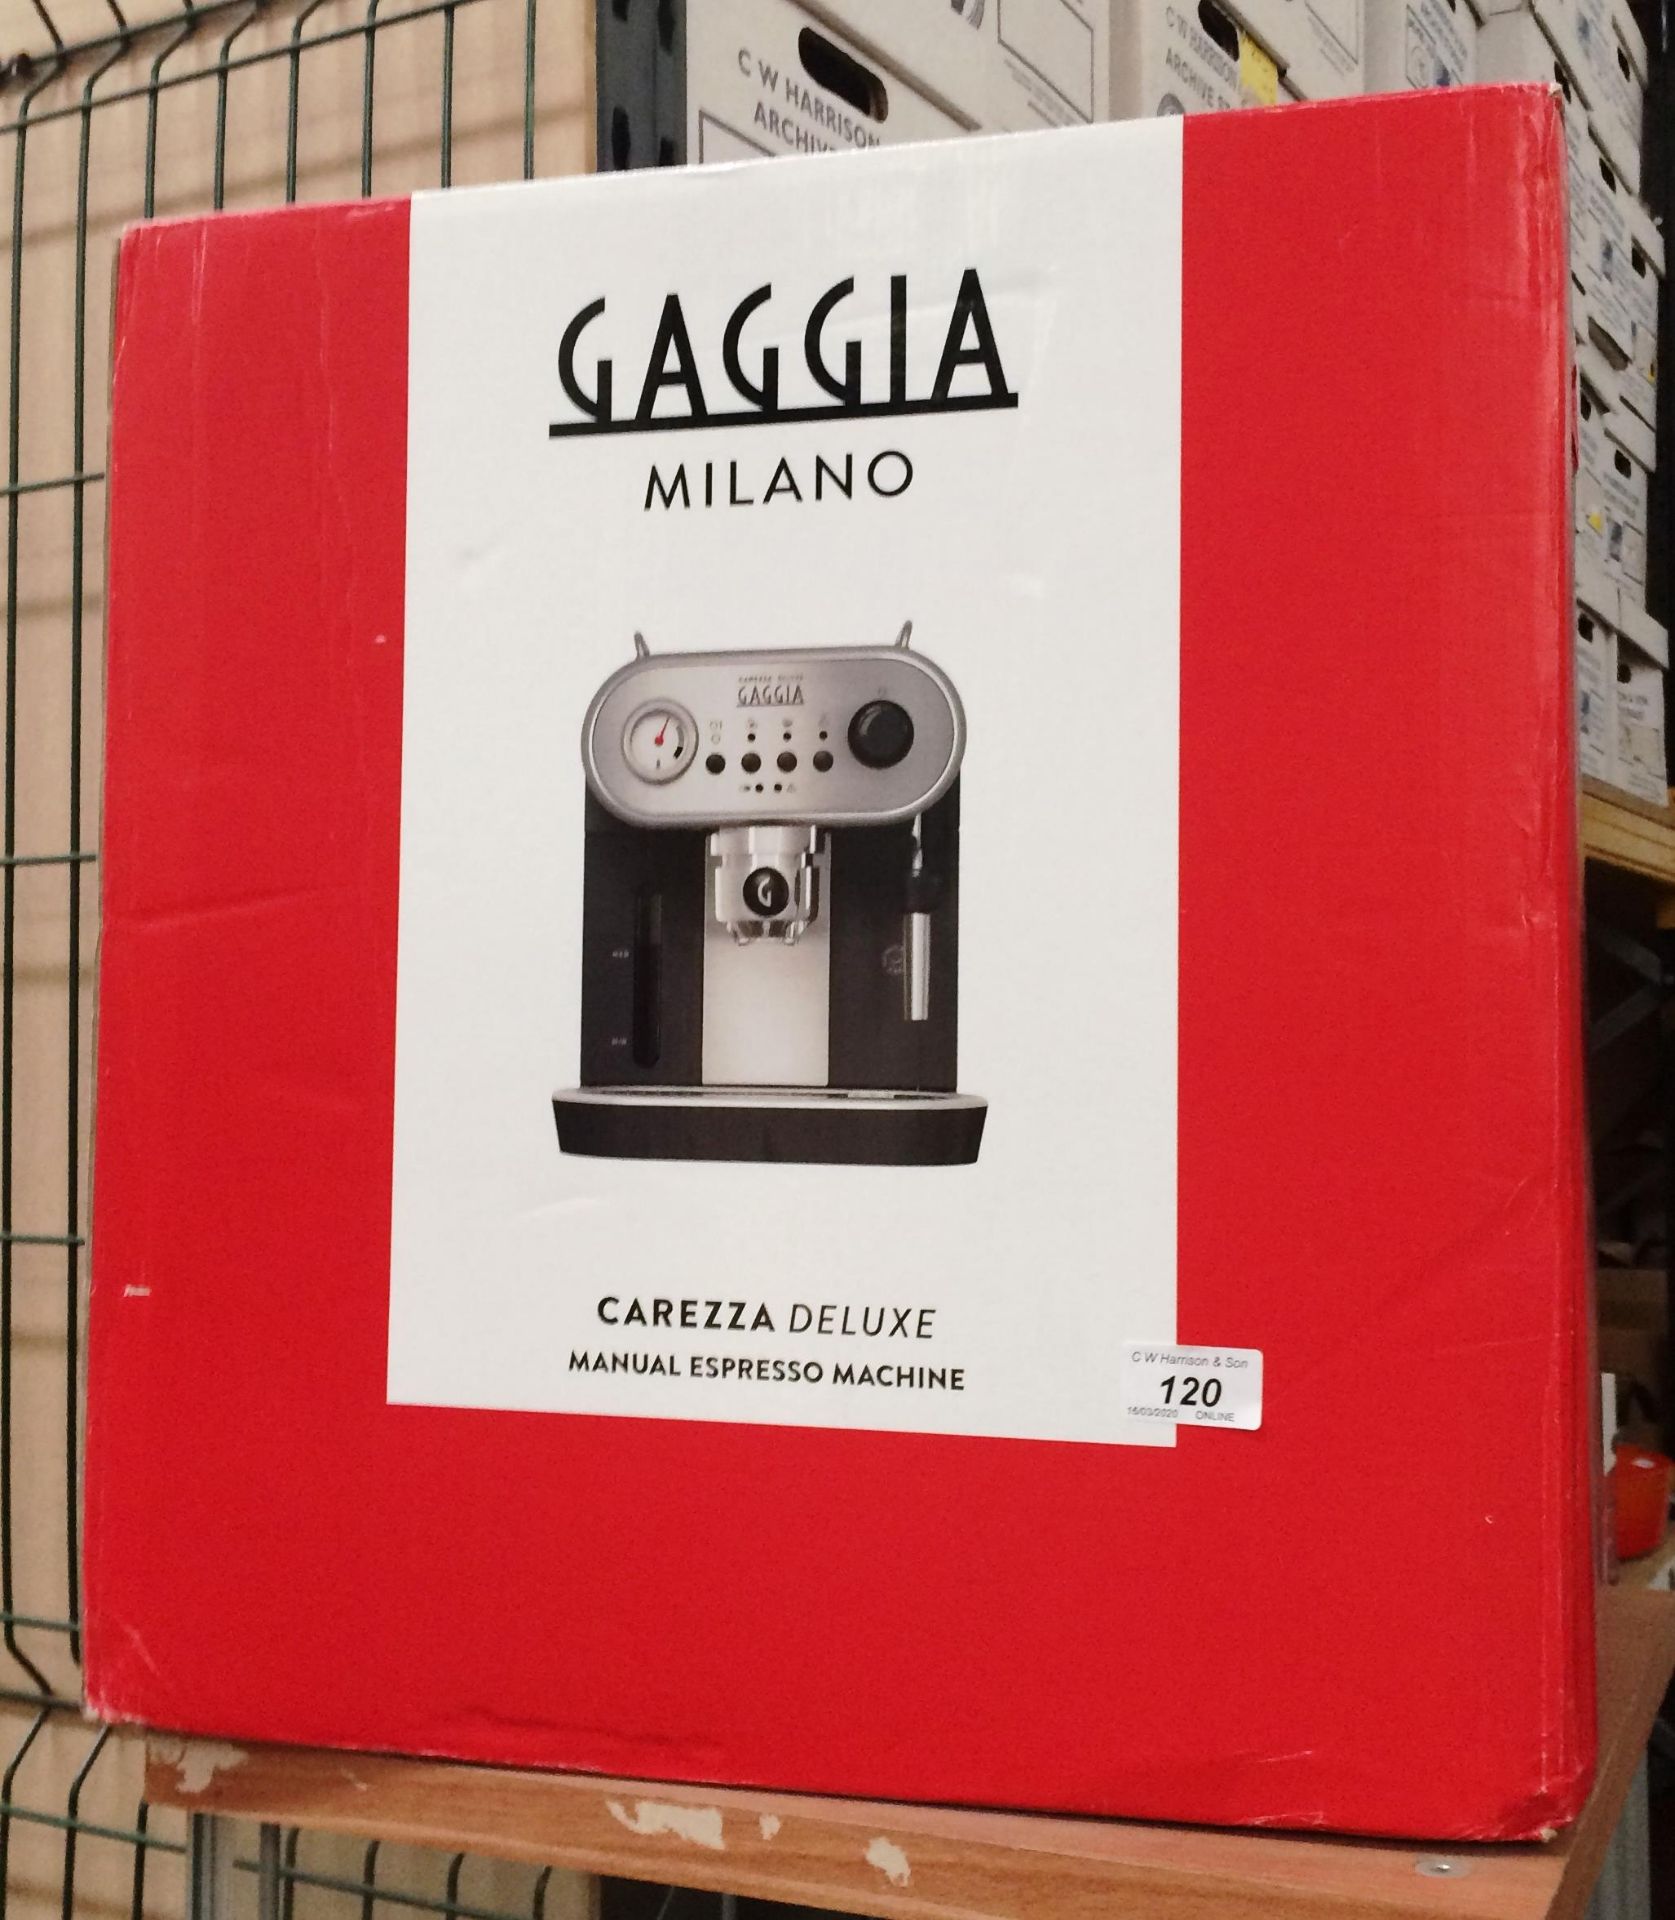 Gaggia Milano Carezza deluxe espresso machine